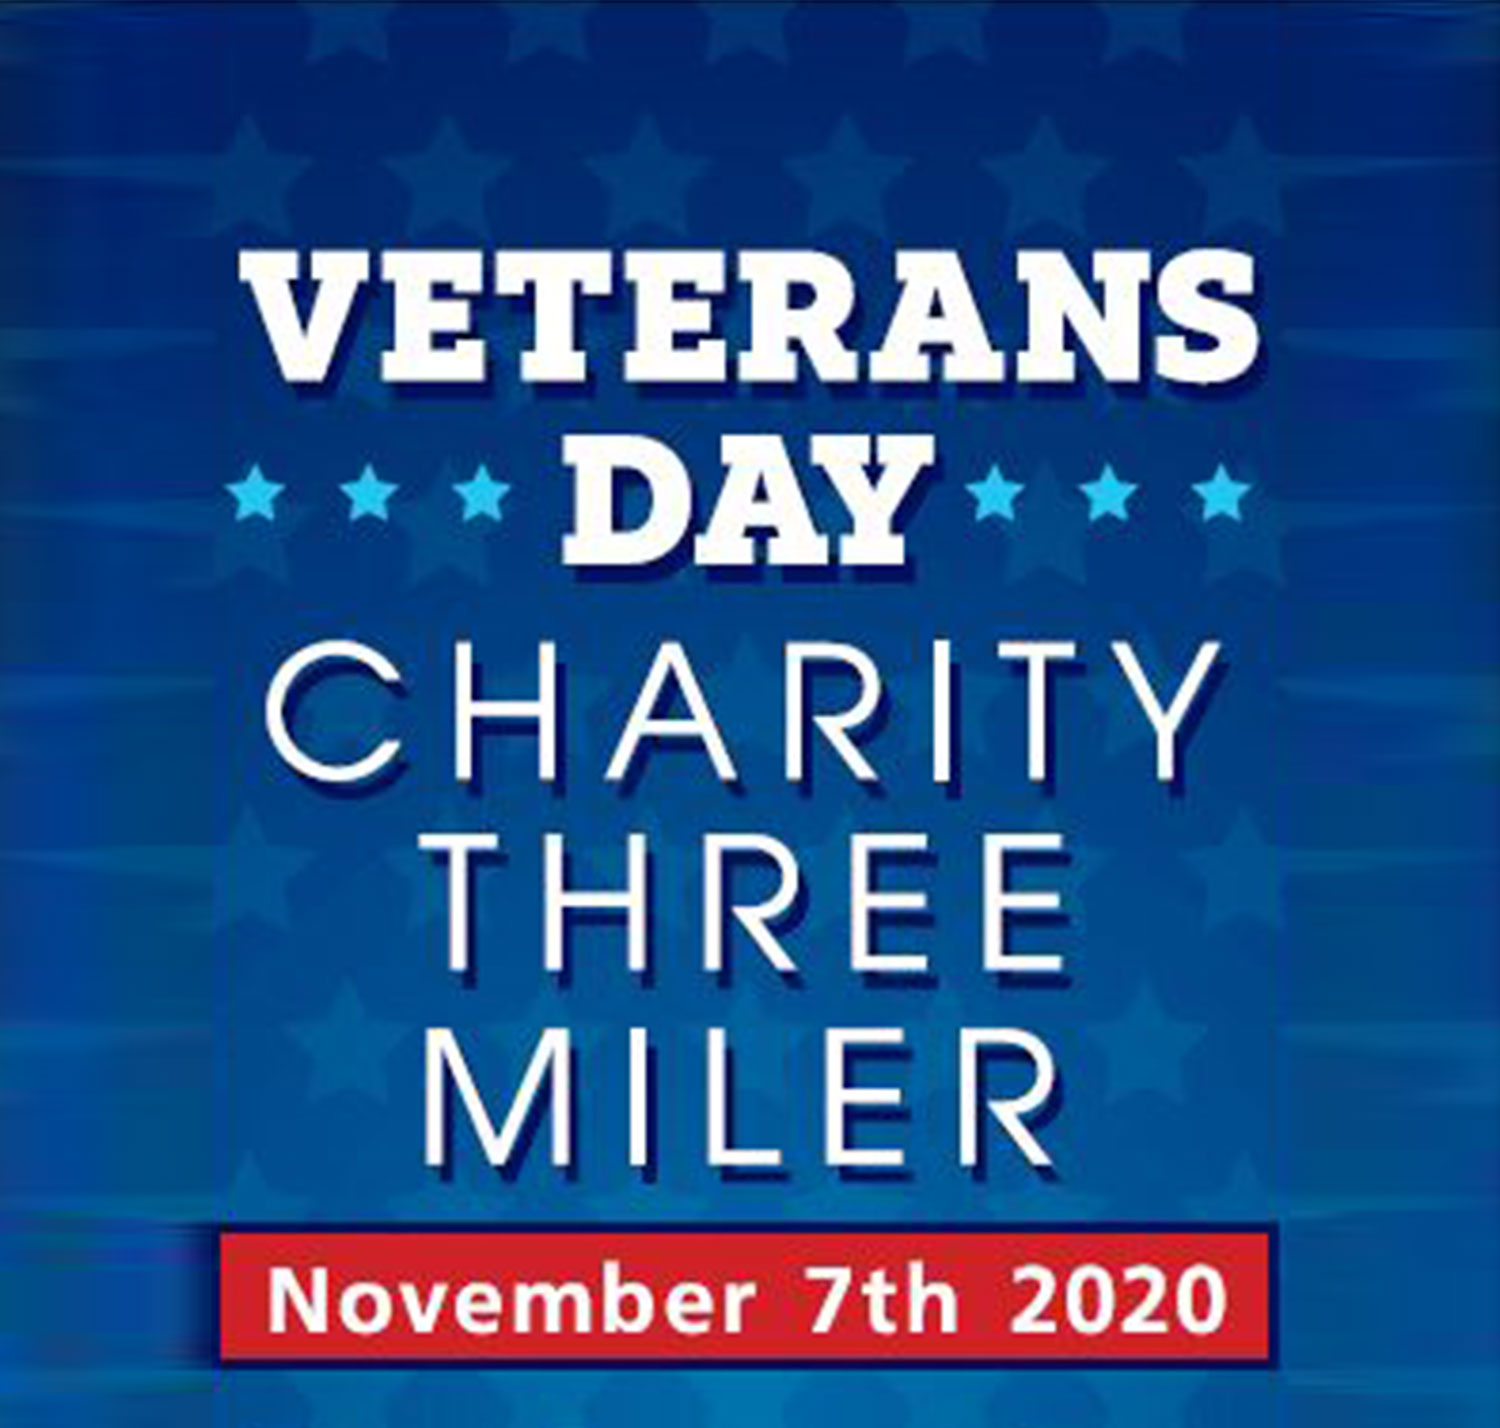 Veterans Day Charity 3 Miler